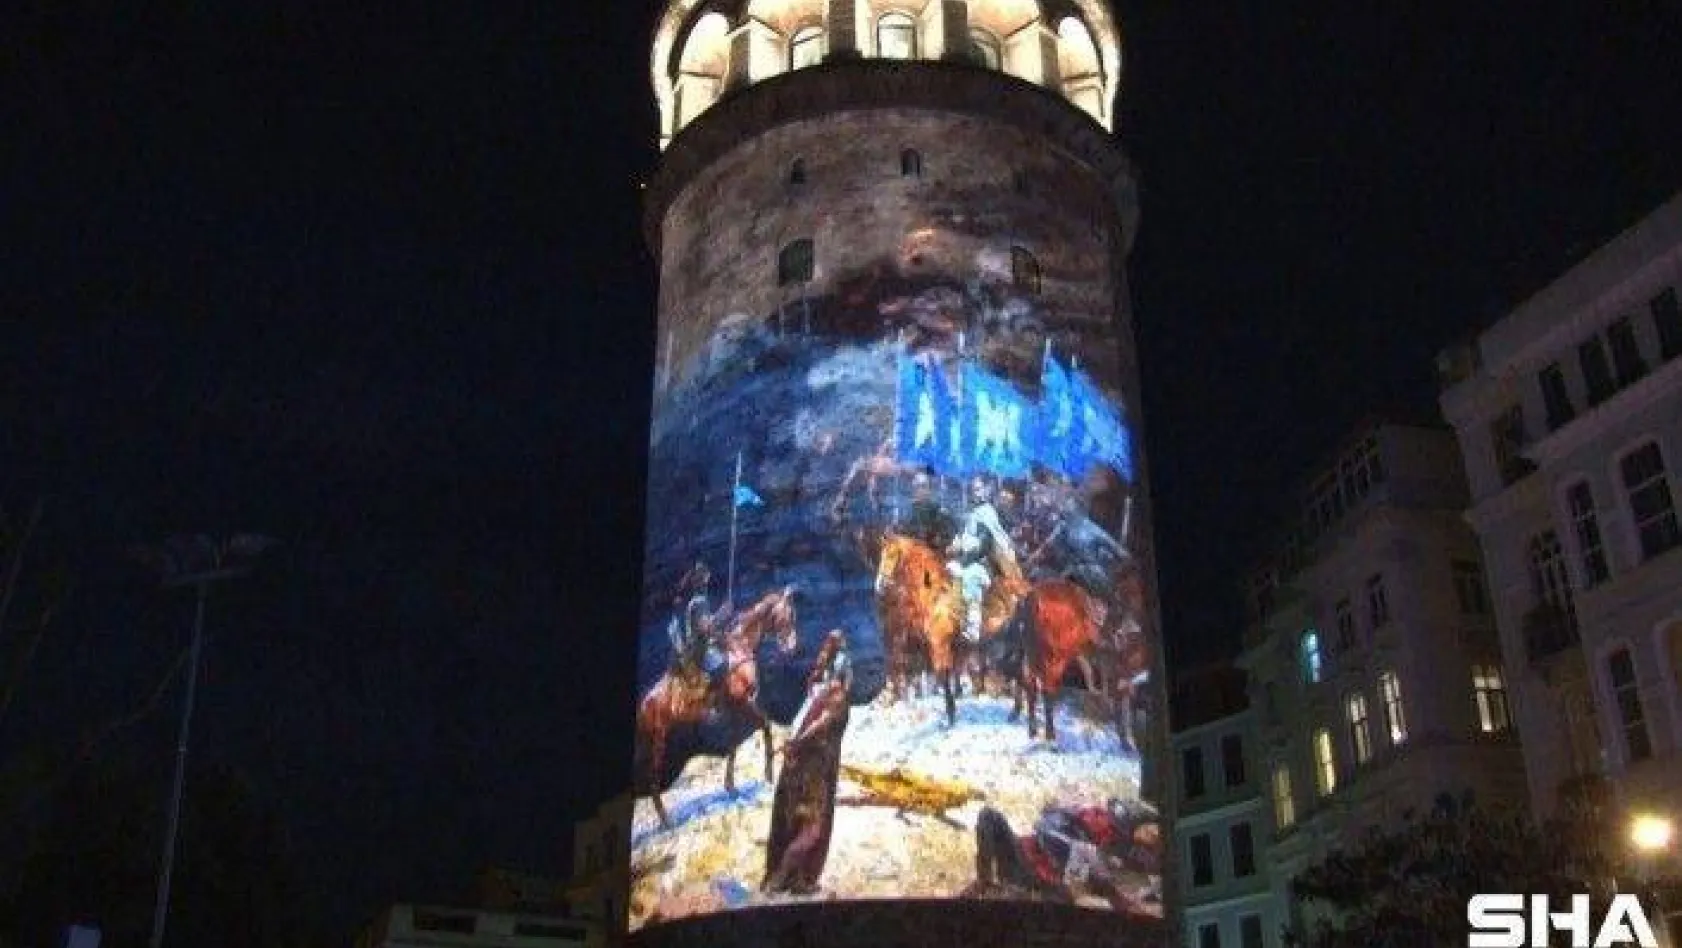 19 Mayıs Atatürk'ü Anma, Gençlik ve Spor Bayramı, Galata Kulesi'ne yansıtılan slayt ile kutlandı